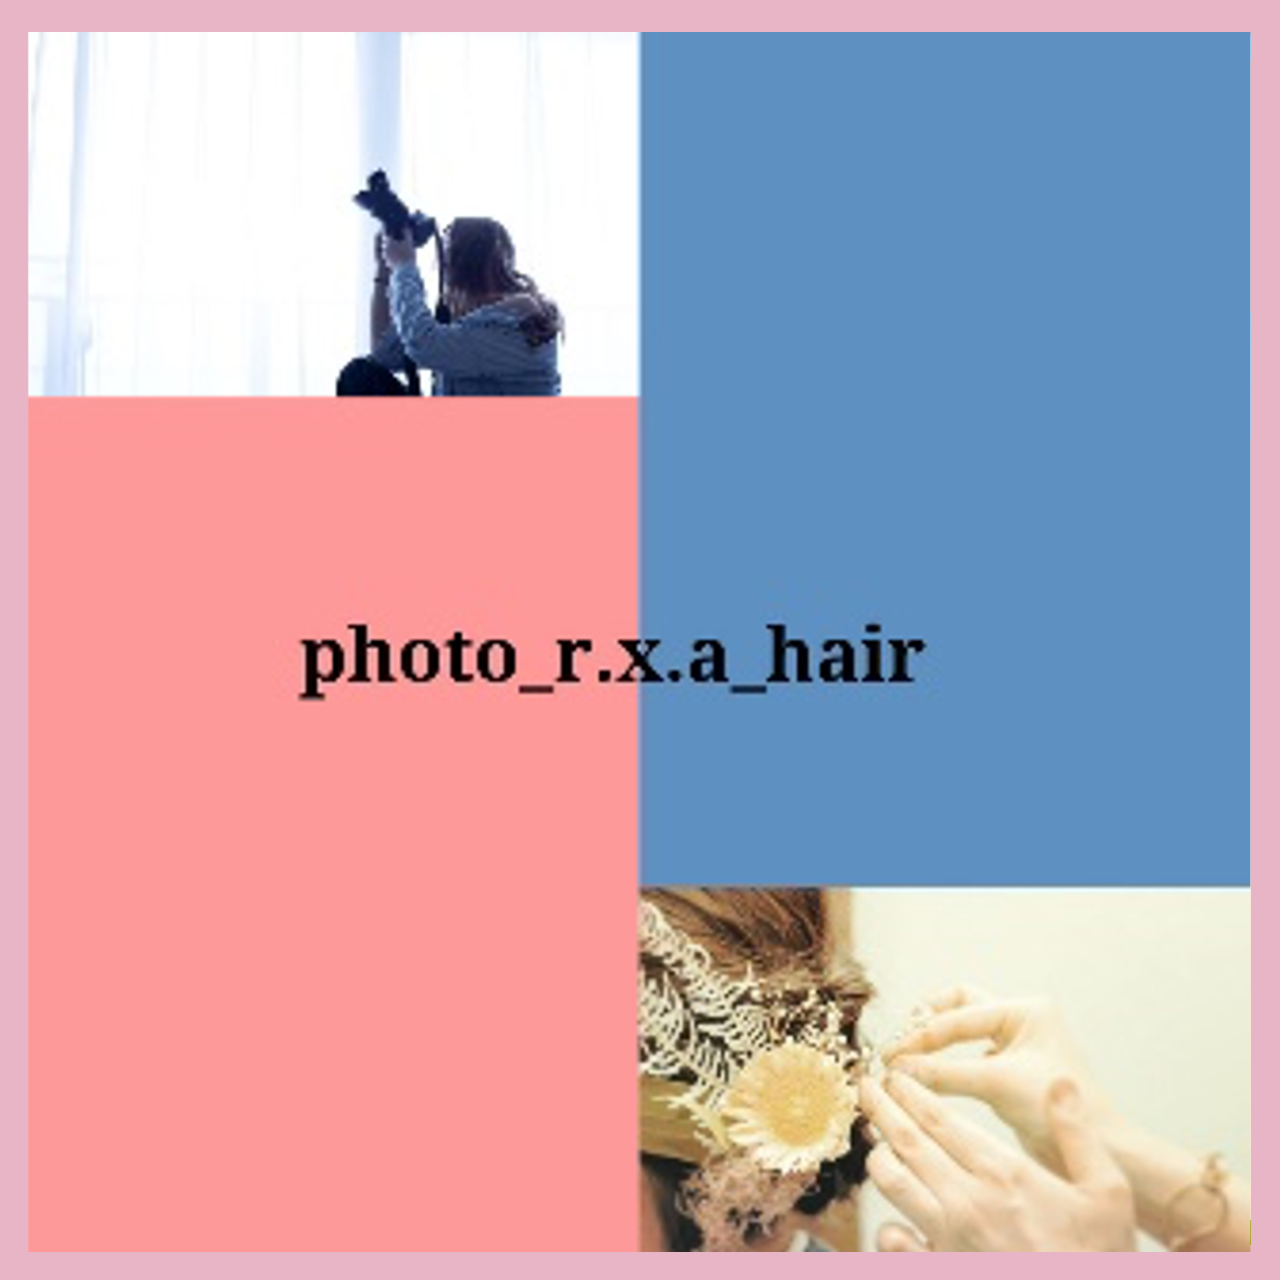 photo_r.x.a_hair